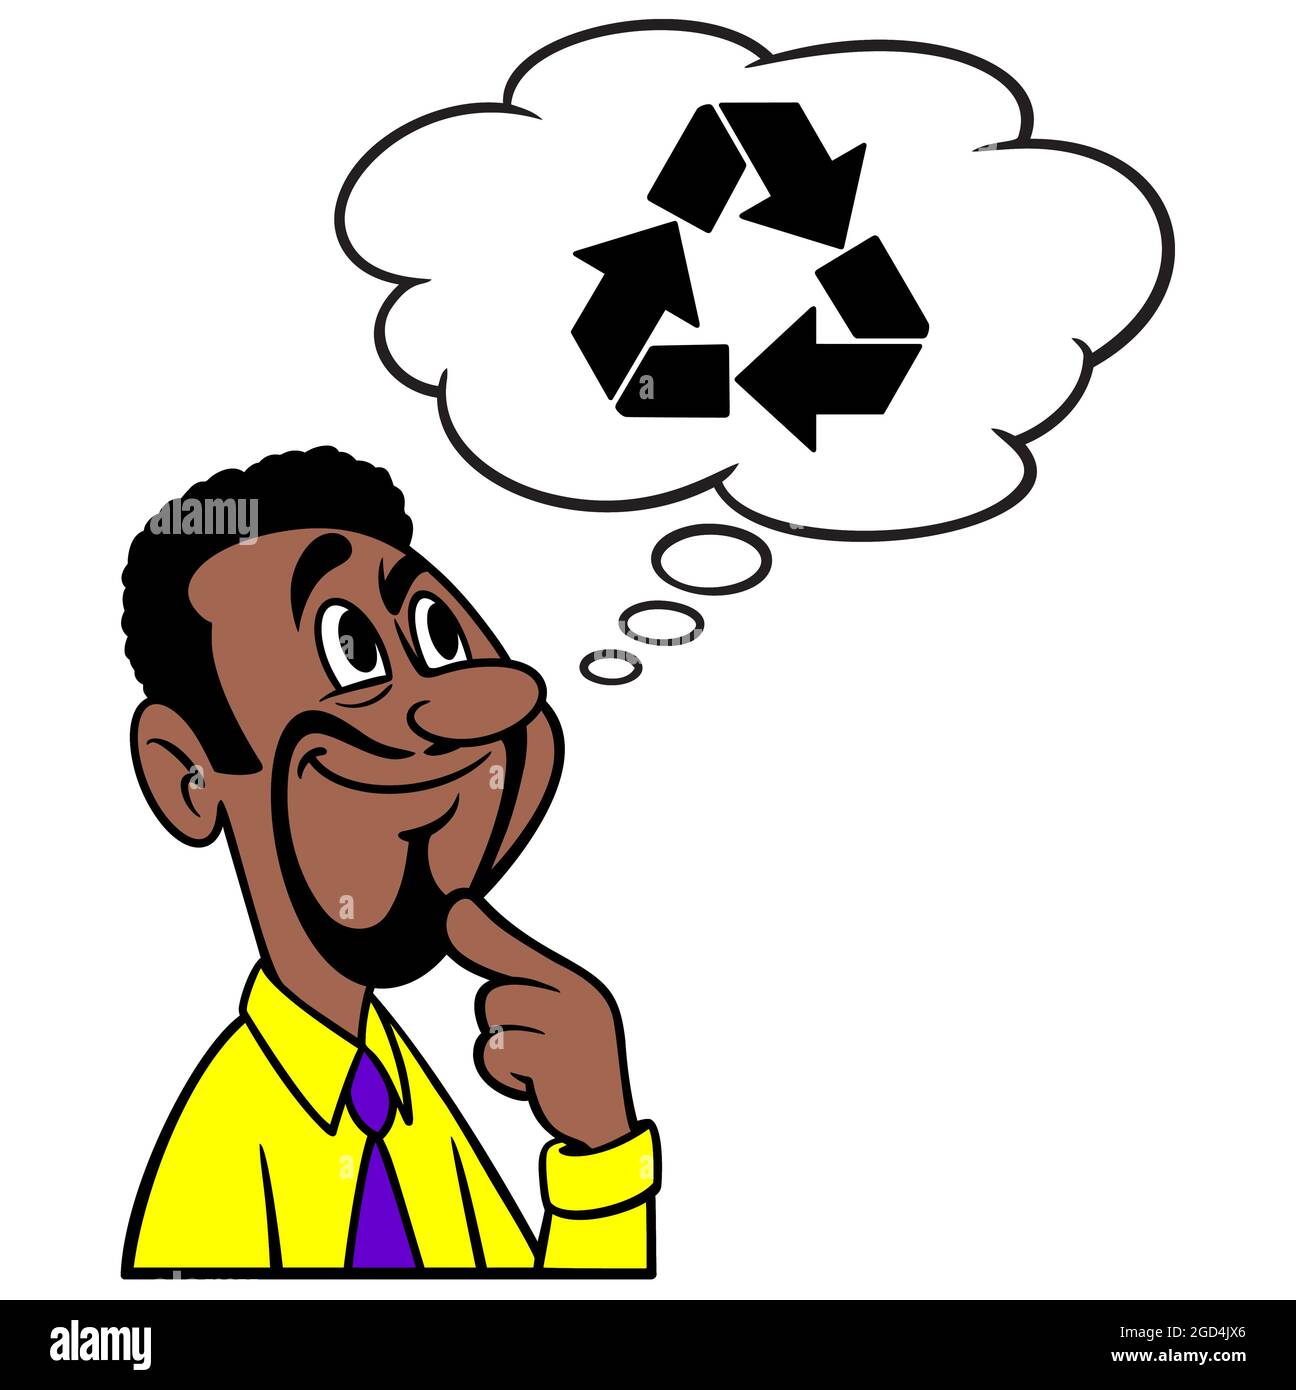 Man Thinking about Recycling - EINE Cartoon-Illustration eines Mannes, der über die Hindernisse des Recycling nachdenkt. Stock Vektor